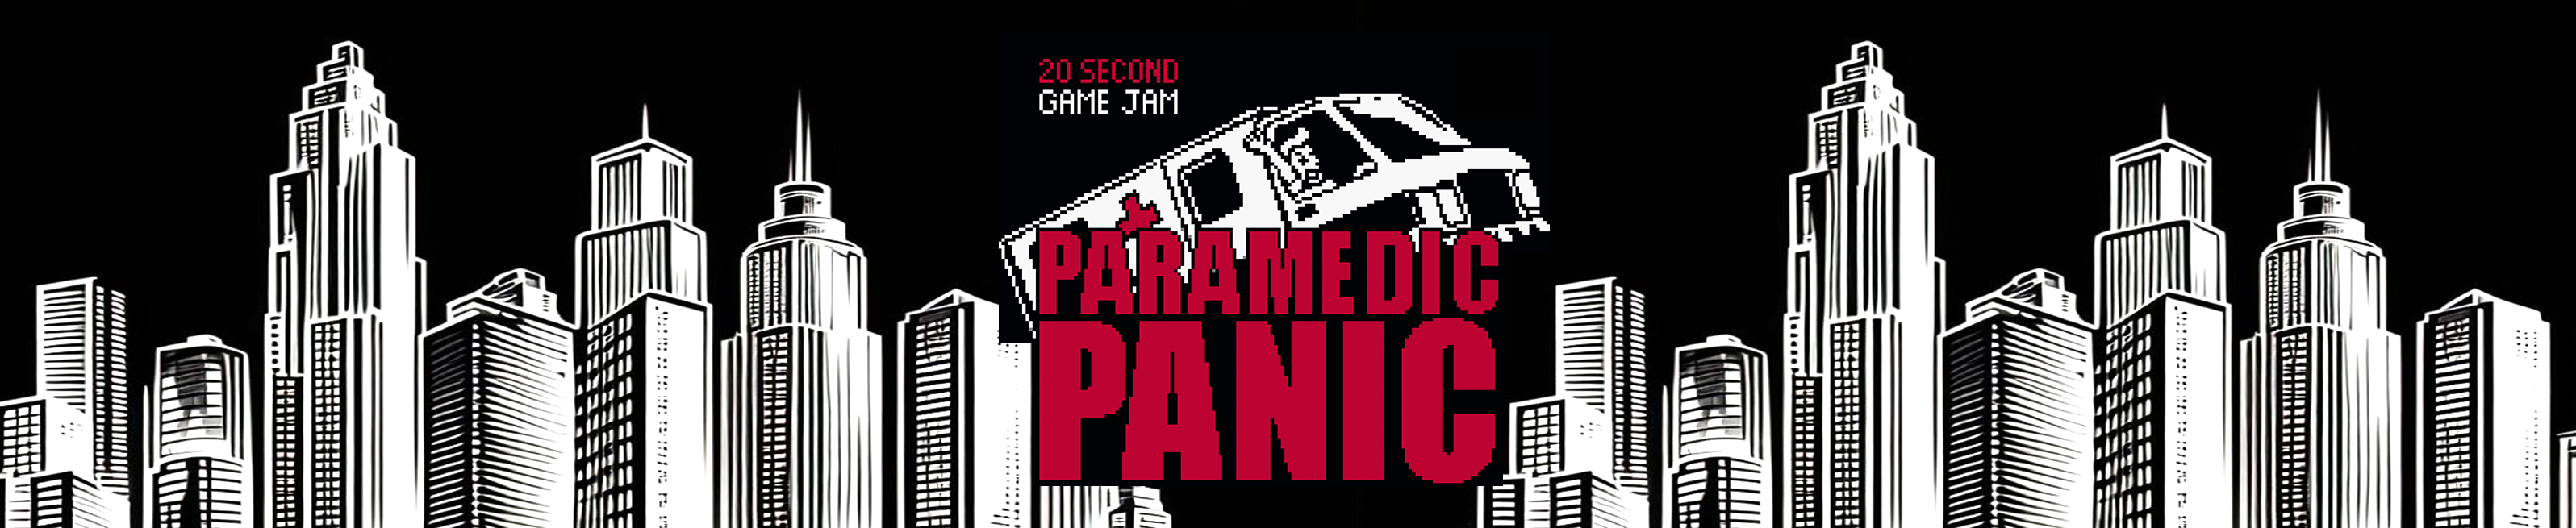 Paramedic Panic / 20 Second Game Jam